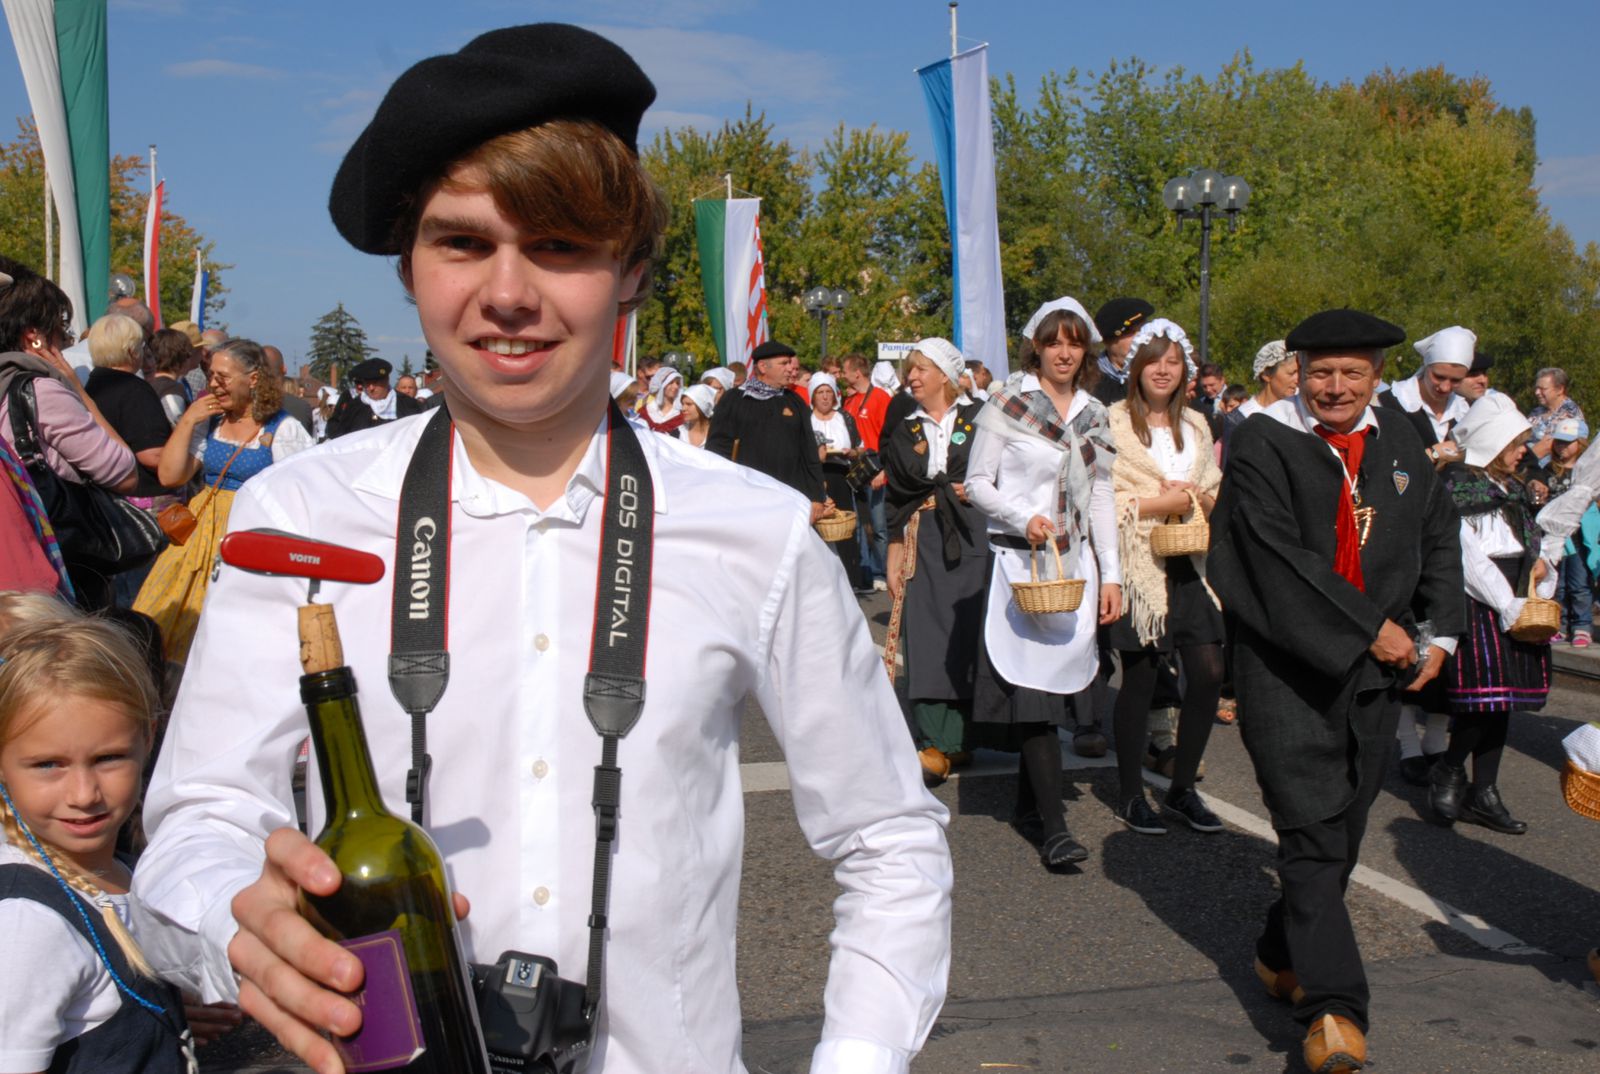 Jumelages-Amitiés aus Pamiers in Crailsheim, unterstützt von 44 Deutschen beim Volksfestumzug 2011